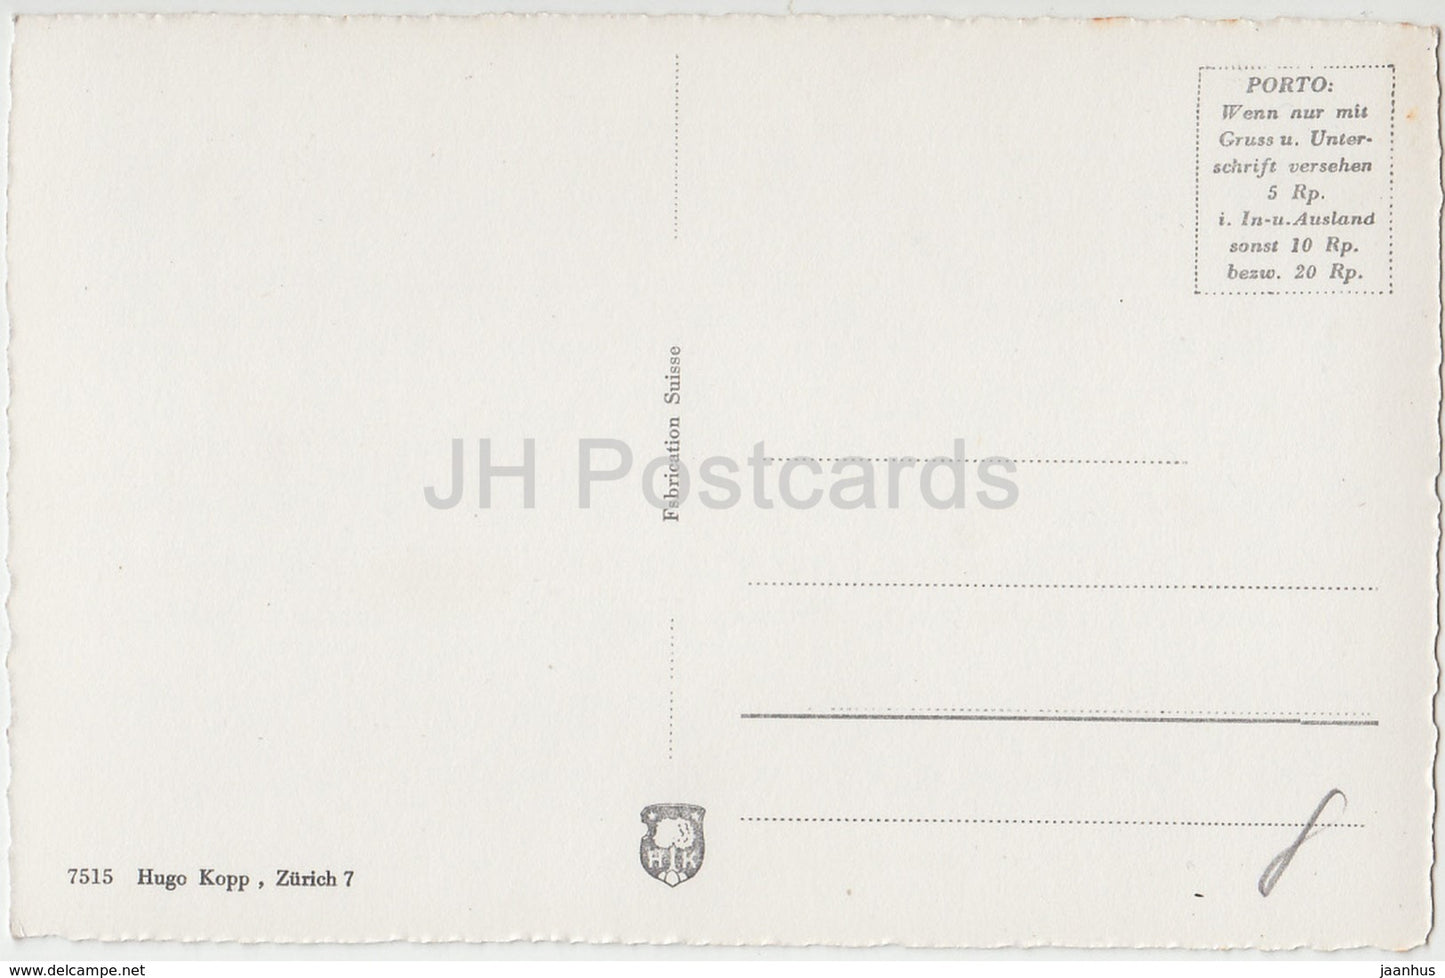 Nussbaumen - Schloss Katharinenberg - Schloss - 7515 - 1 - Schweiz - alte Postkarte - unbenutzt